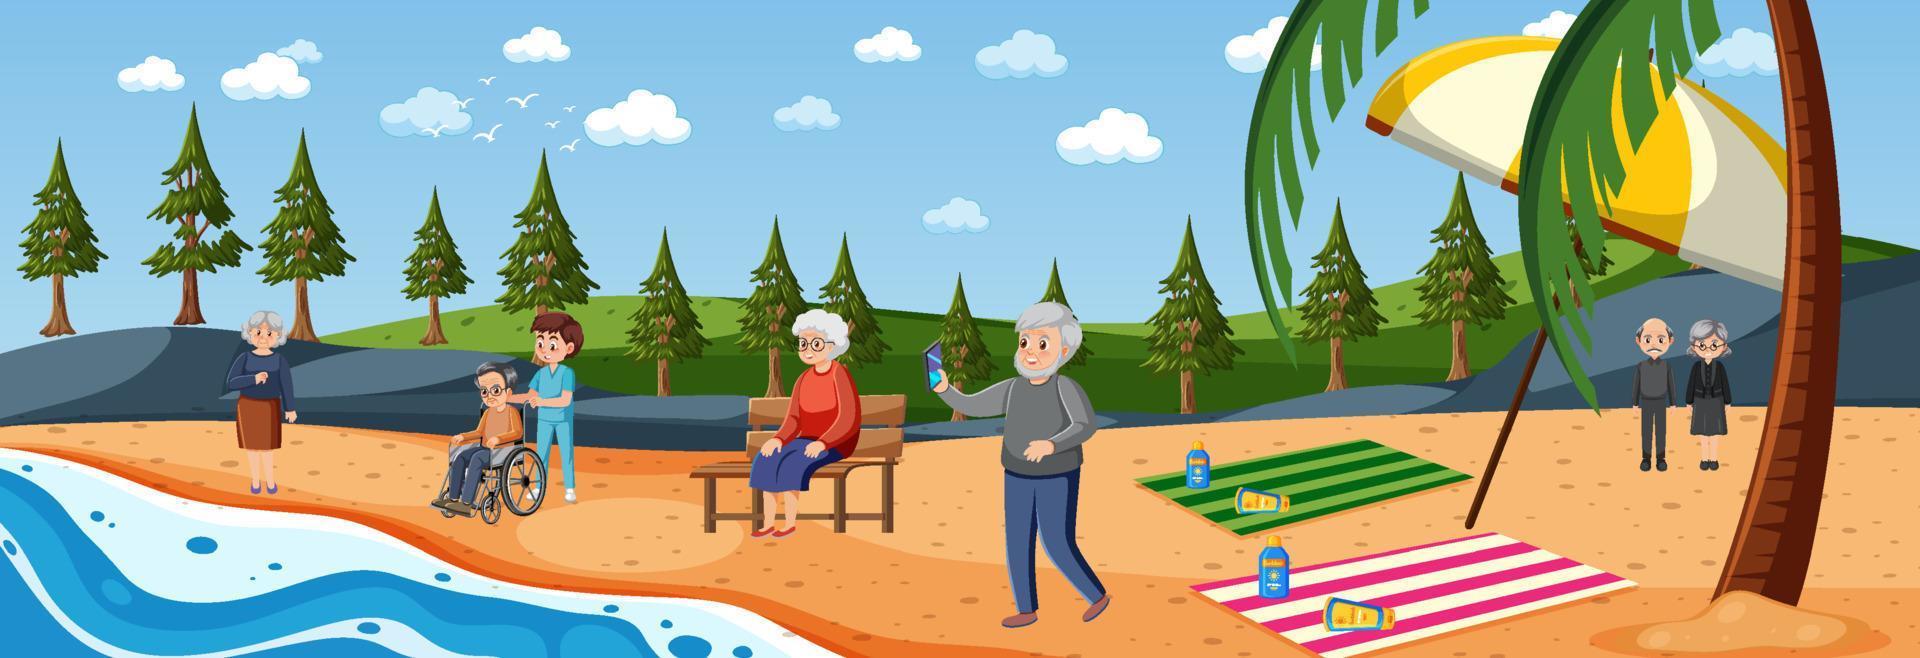 strand scen med senior människor på semester vektor